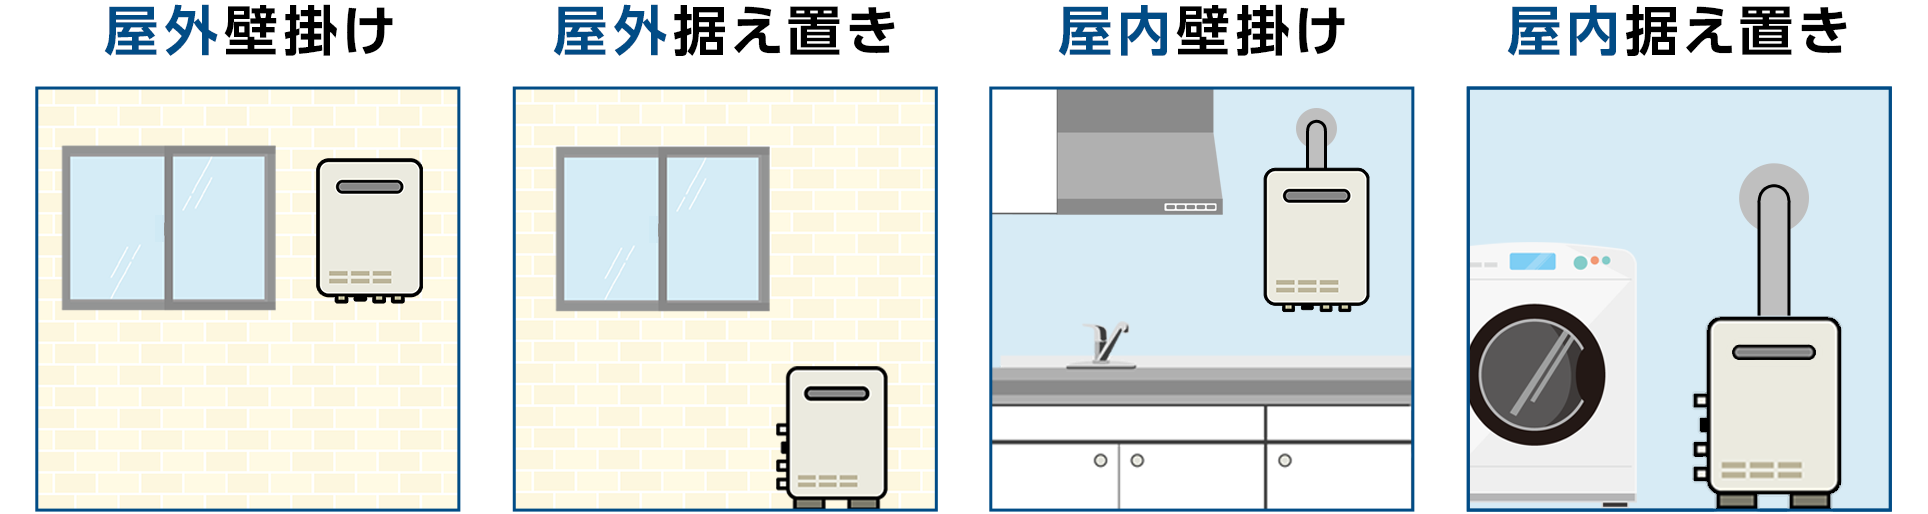 給湯器の設置タイプ例